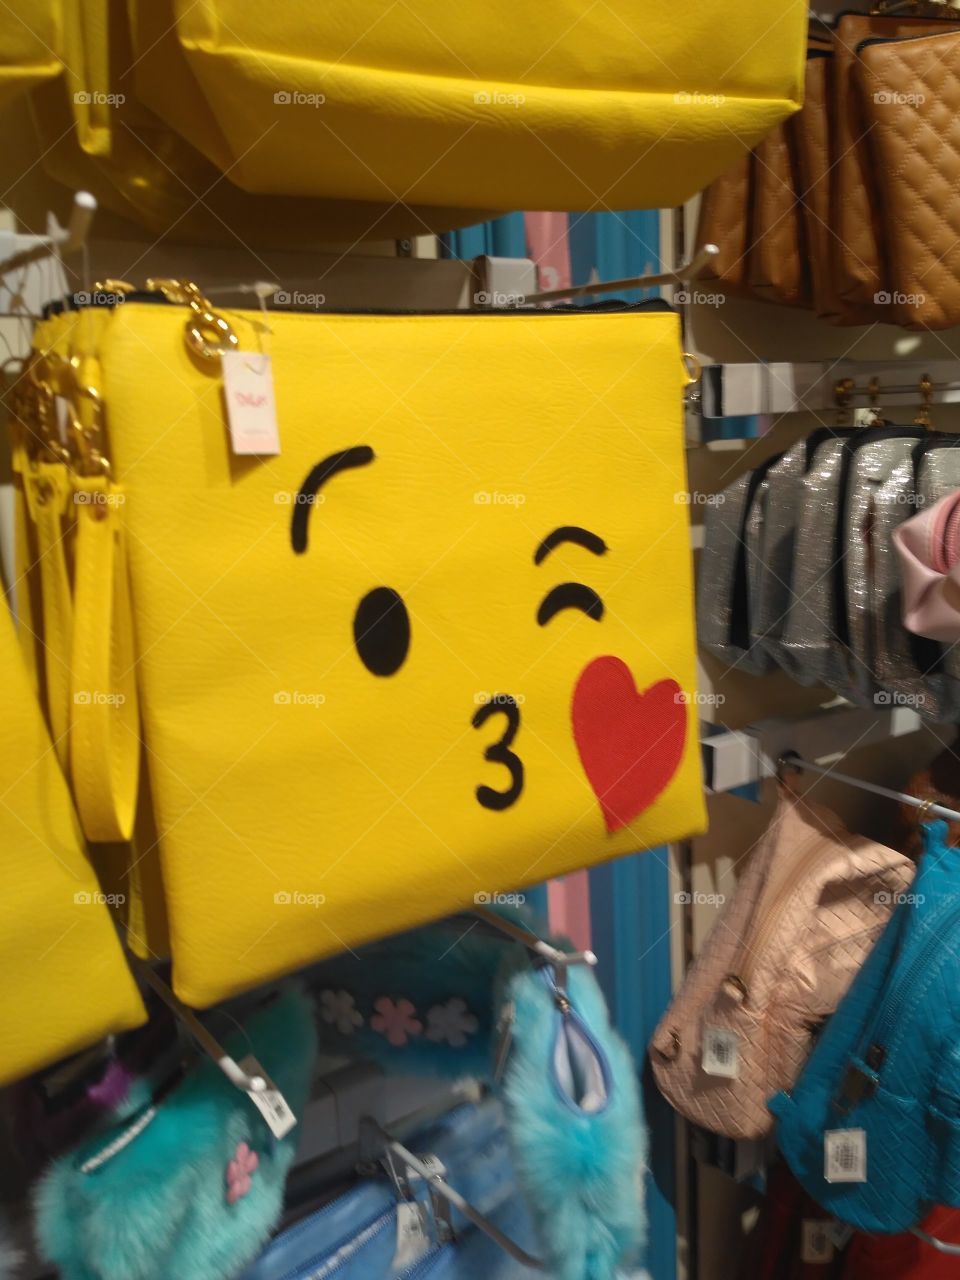 the sling bag emoji's motive